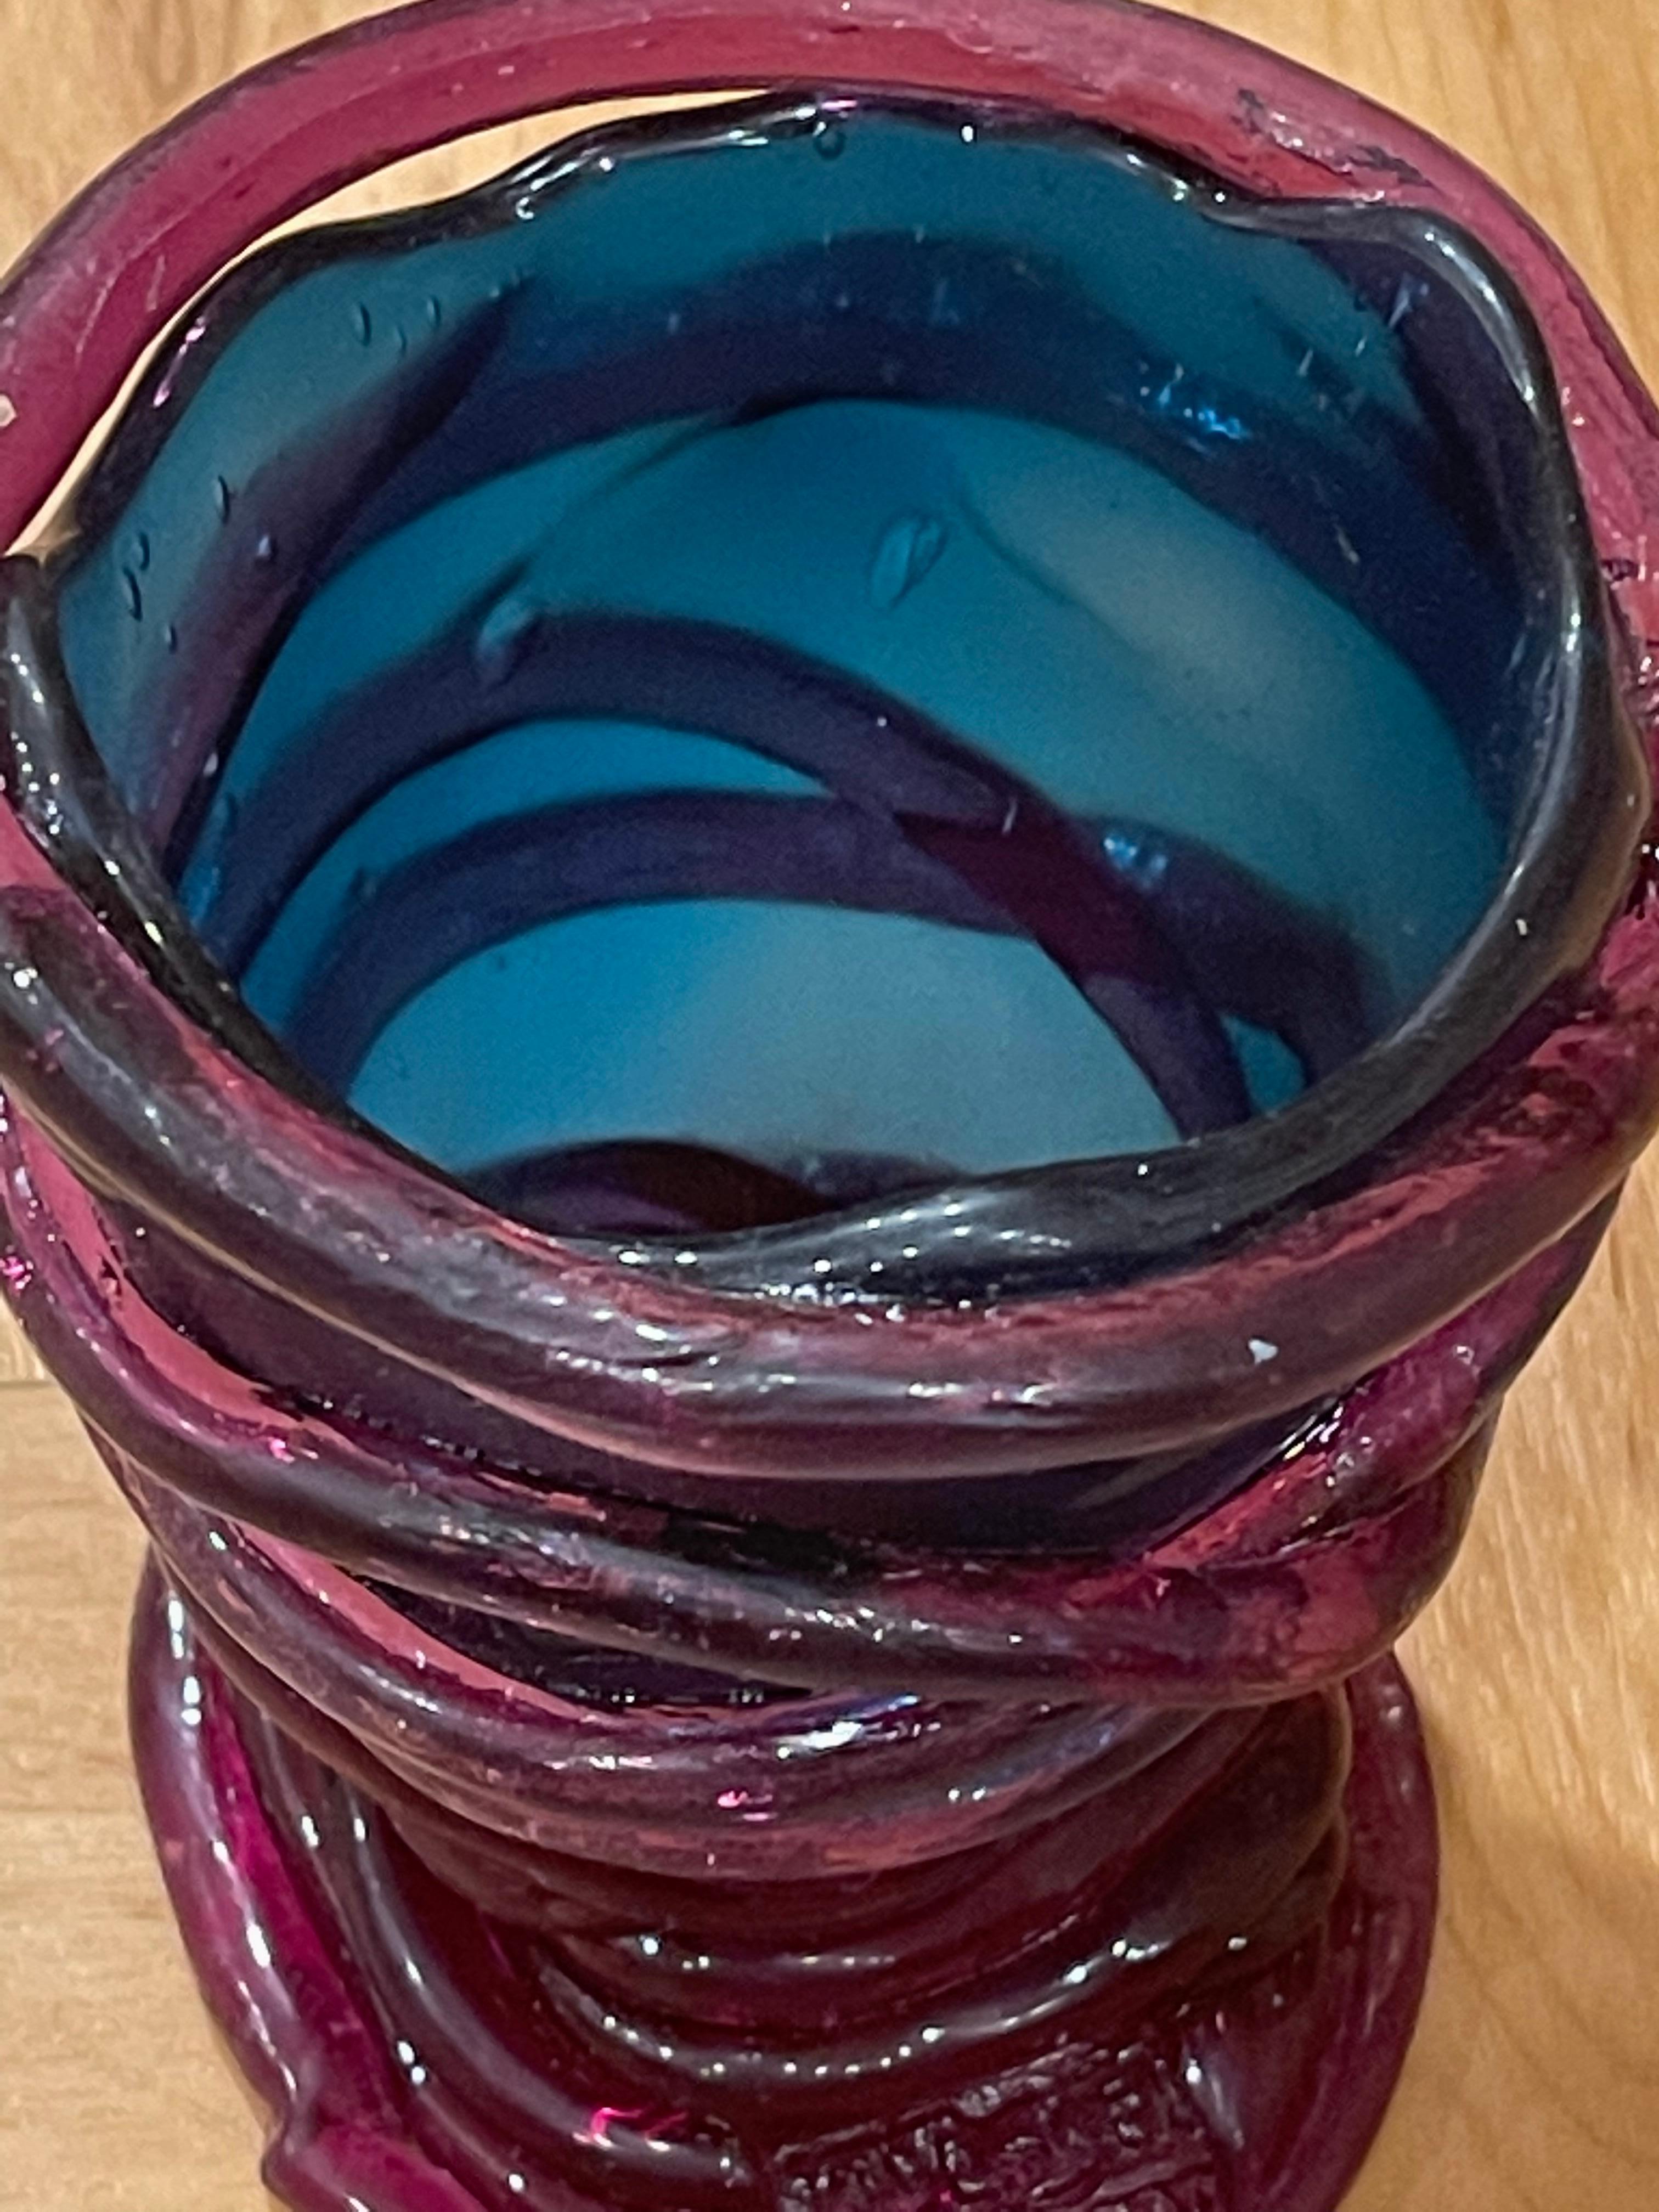 Blau-violette Vase von Gaetano Pesce für Fish Design, NYC. Dieser Meister des Harzes schafft mit Licht, Farbe und Textur in dieser Vase Fantasie auch in kleinem Maßstab.